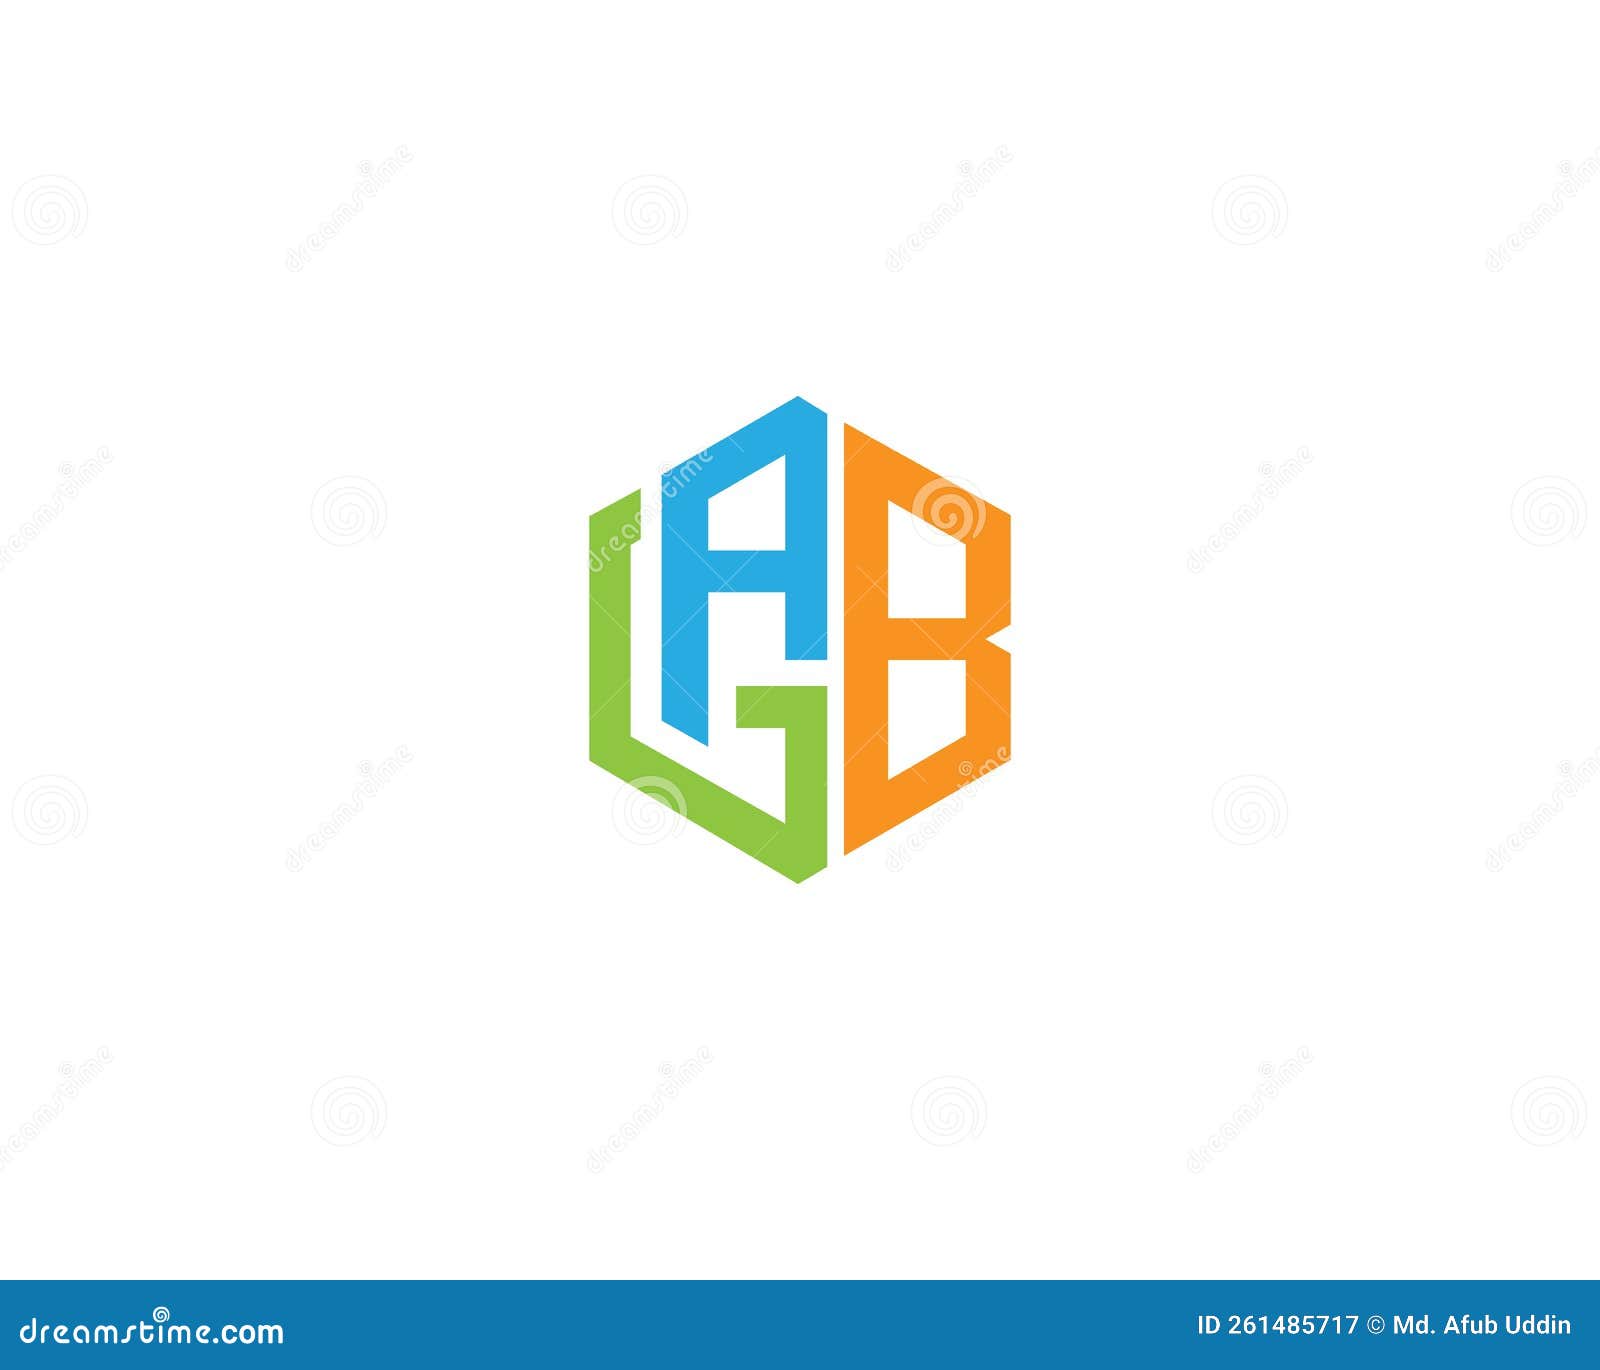 simple elegant gab and agb logo icon 